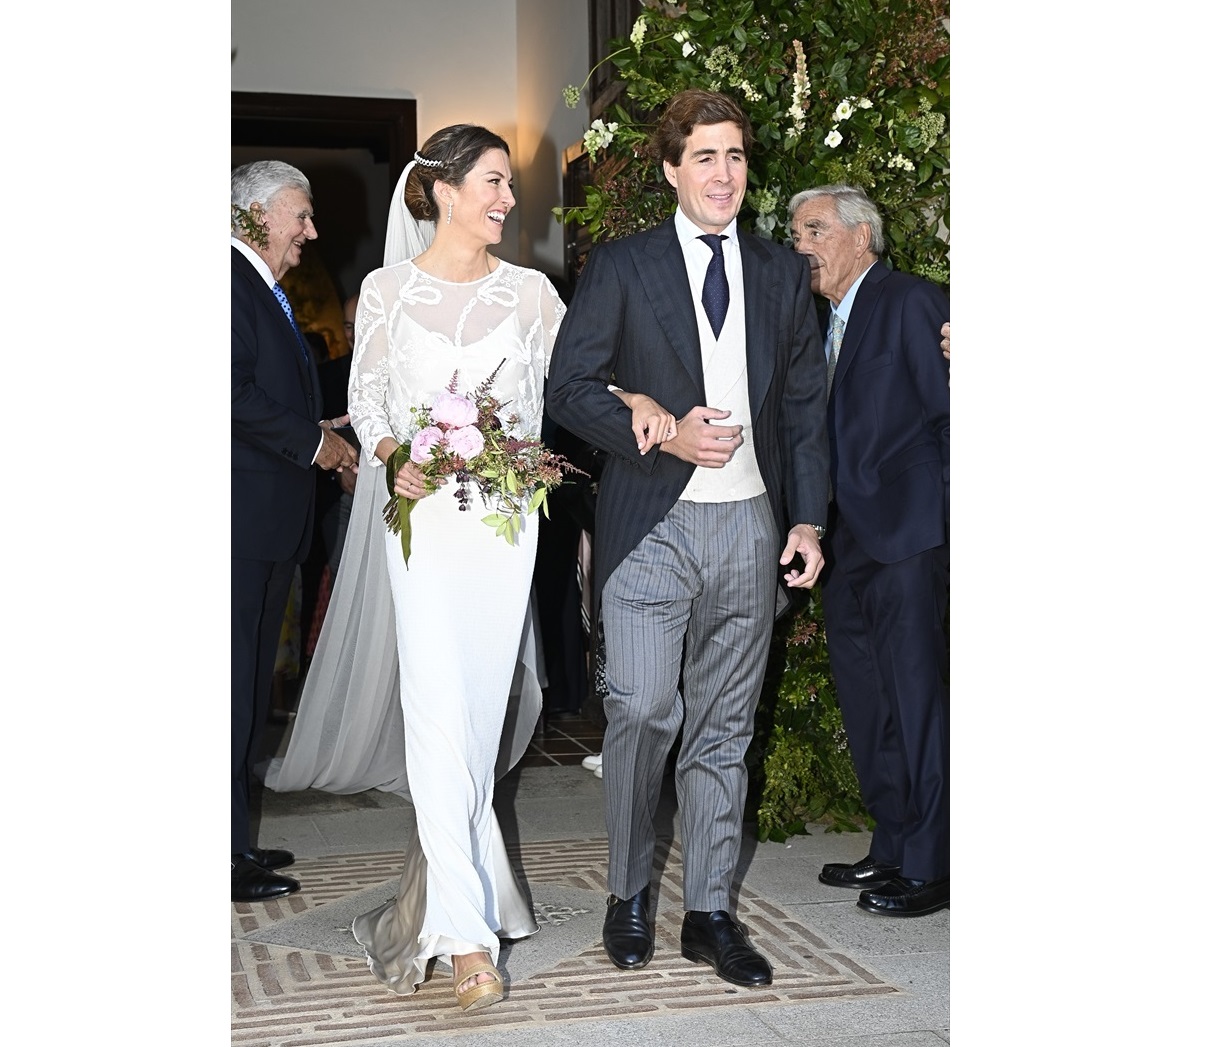 Ignacio del Pino Fernández-Fontecha y su pareja Pilar Montes Yebra el día de su boda